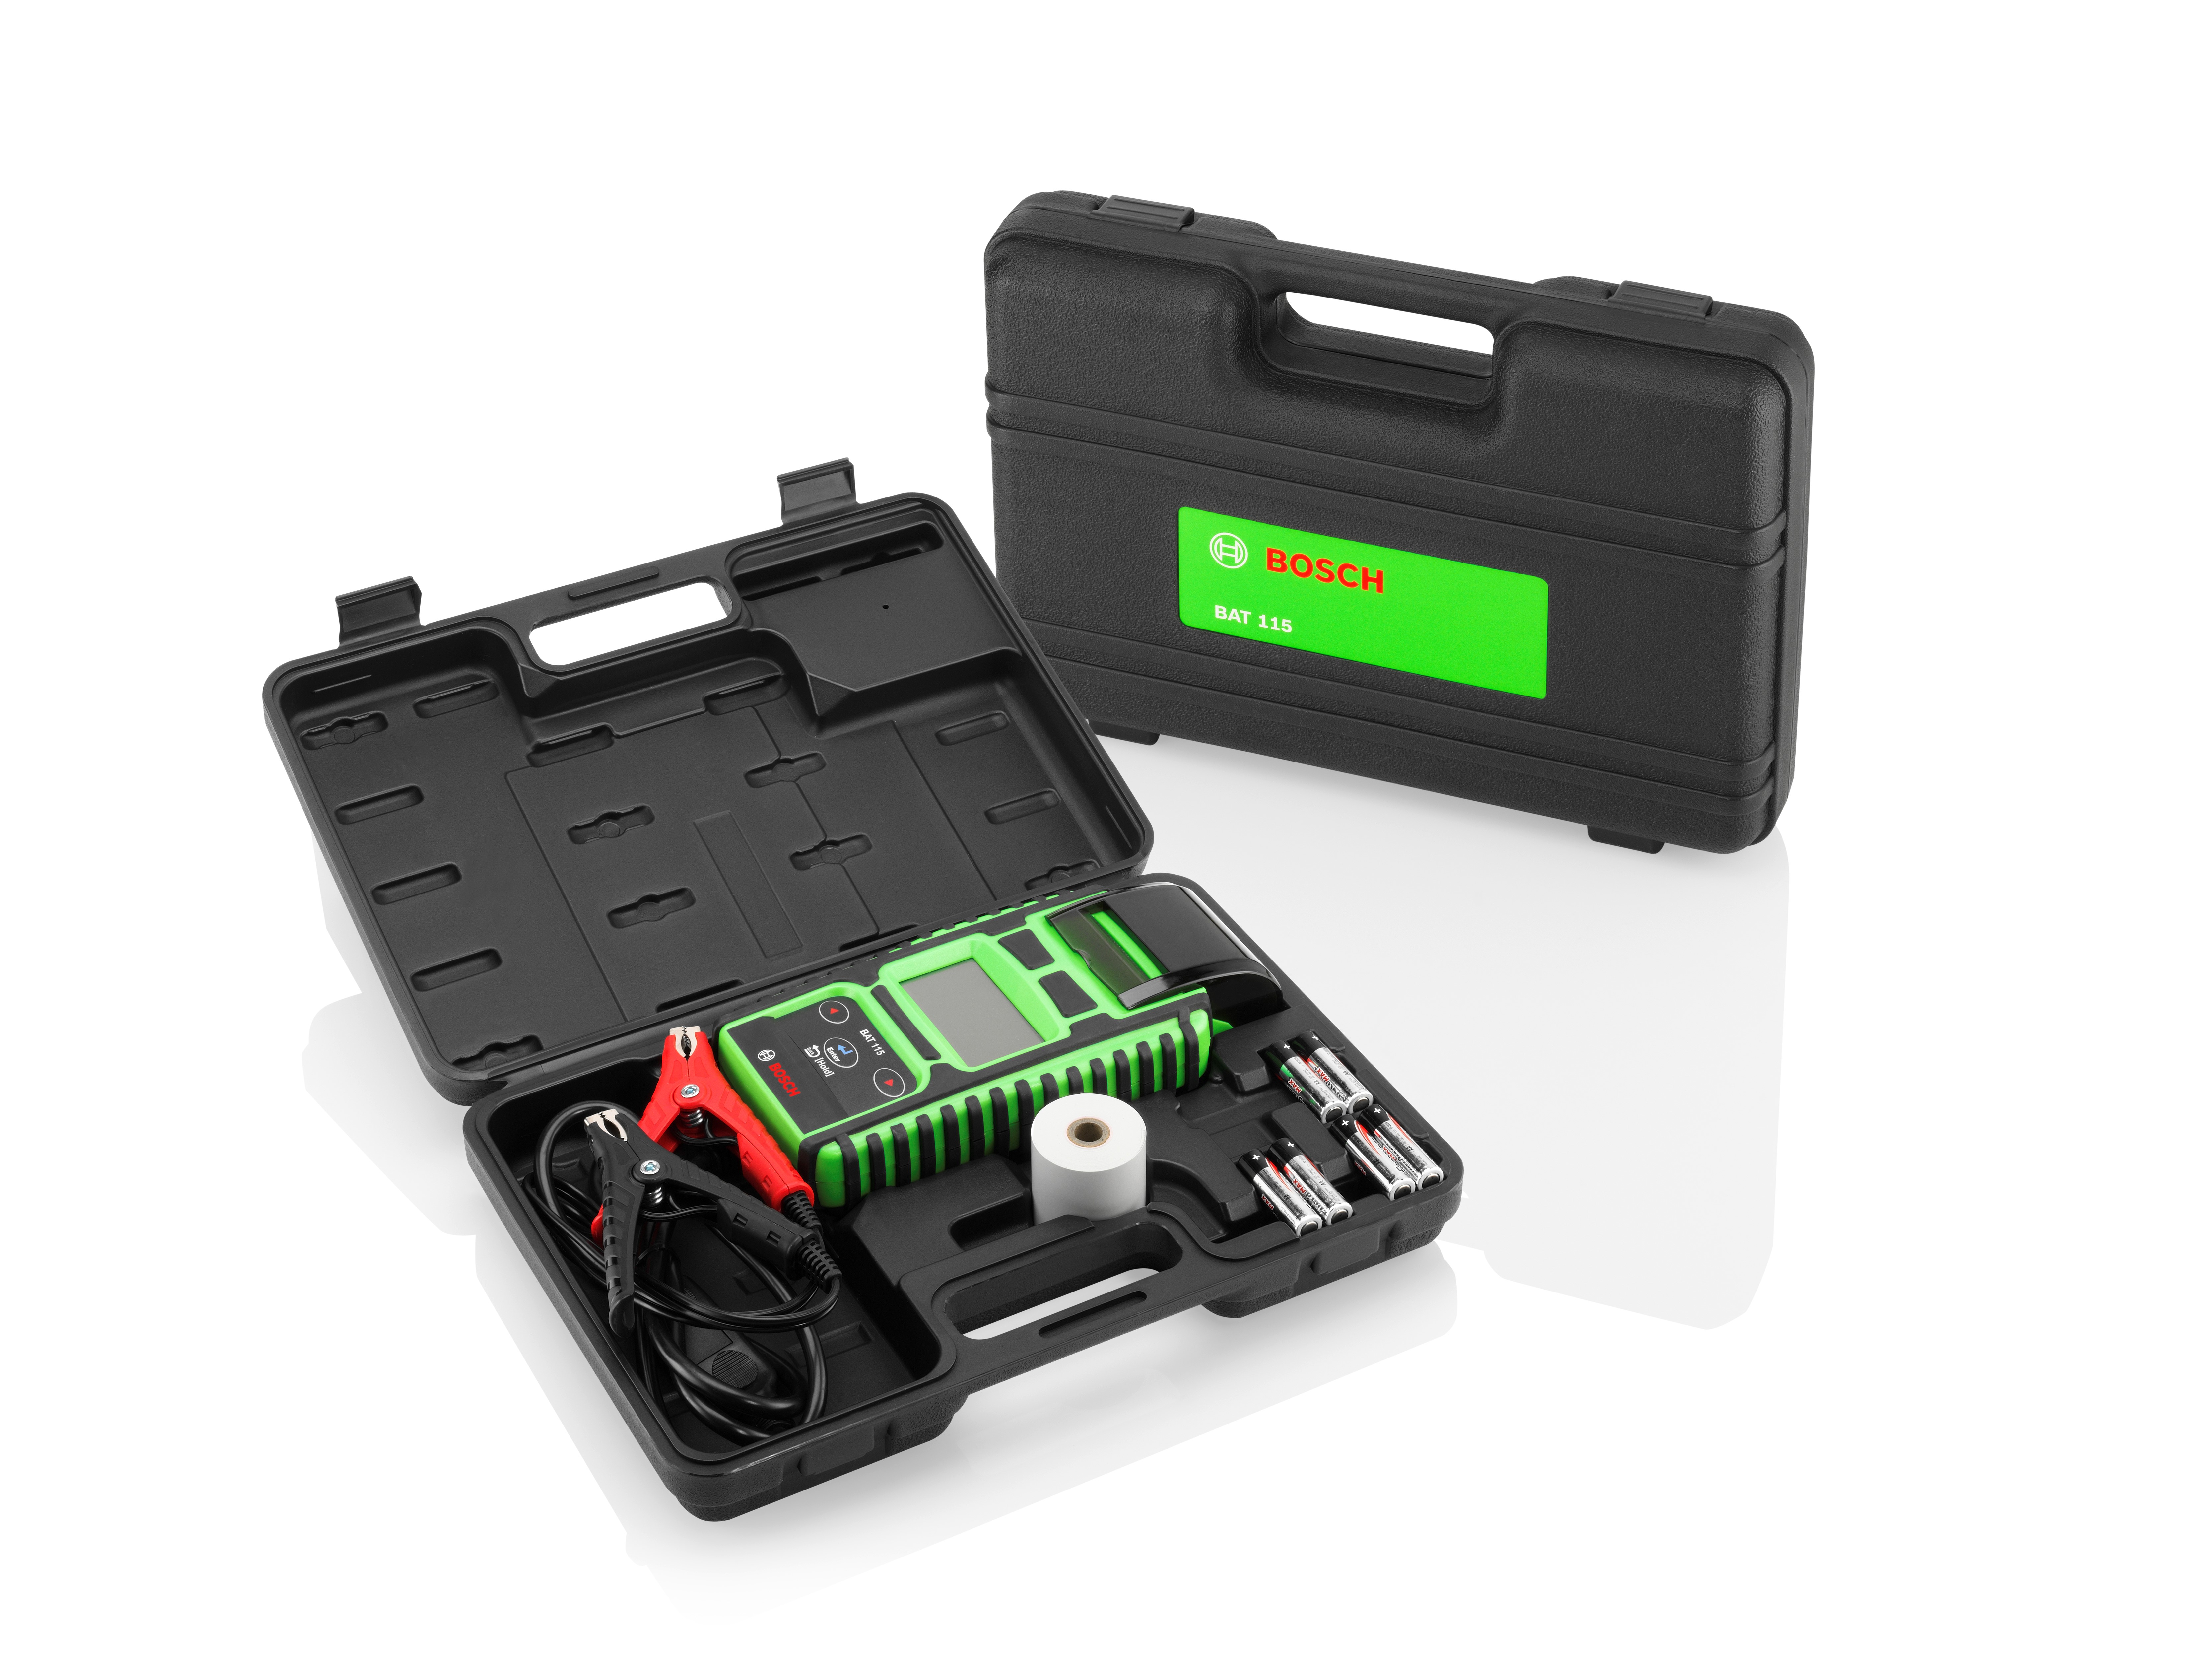 Nouveau testeur de batteries Bosch BAT 115 : rapide et efficace pour  batteries 6V et 12V - Bosch Media Service Belgique